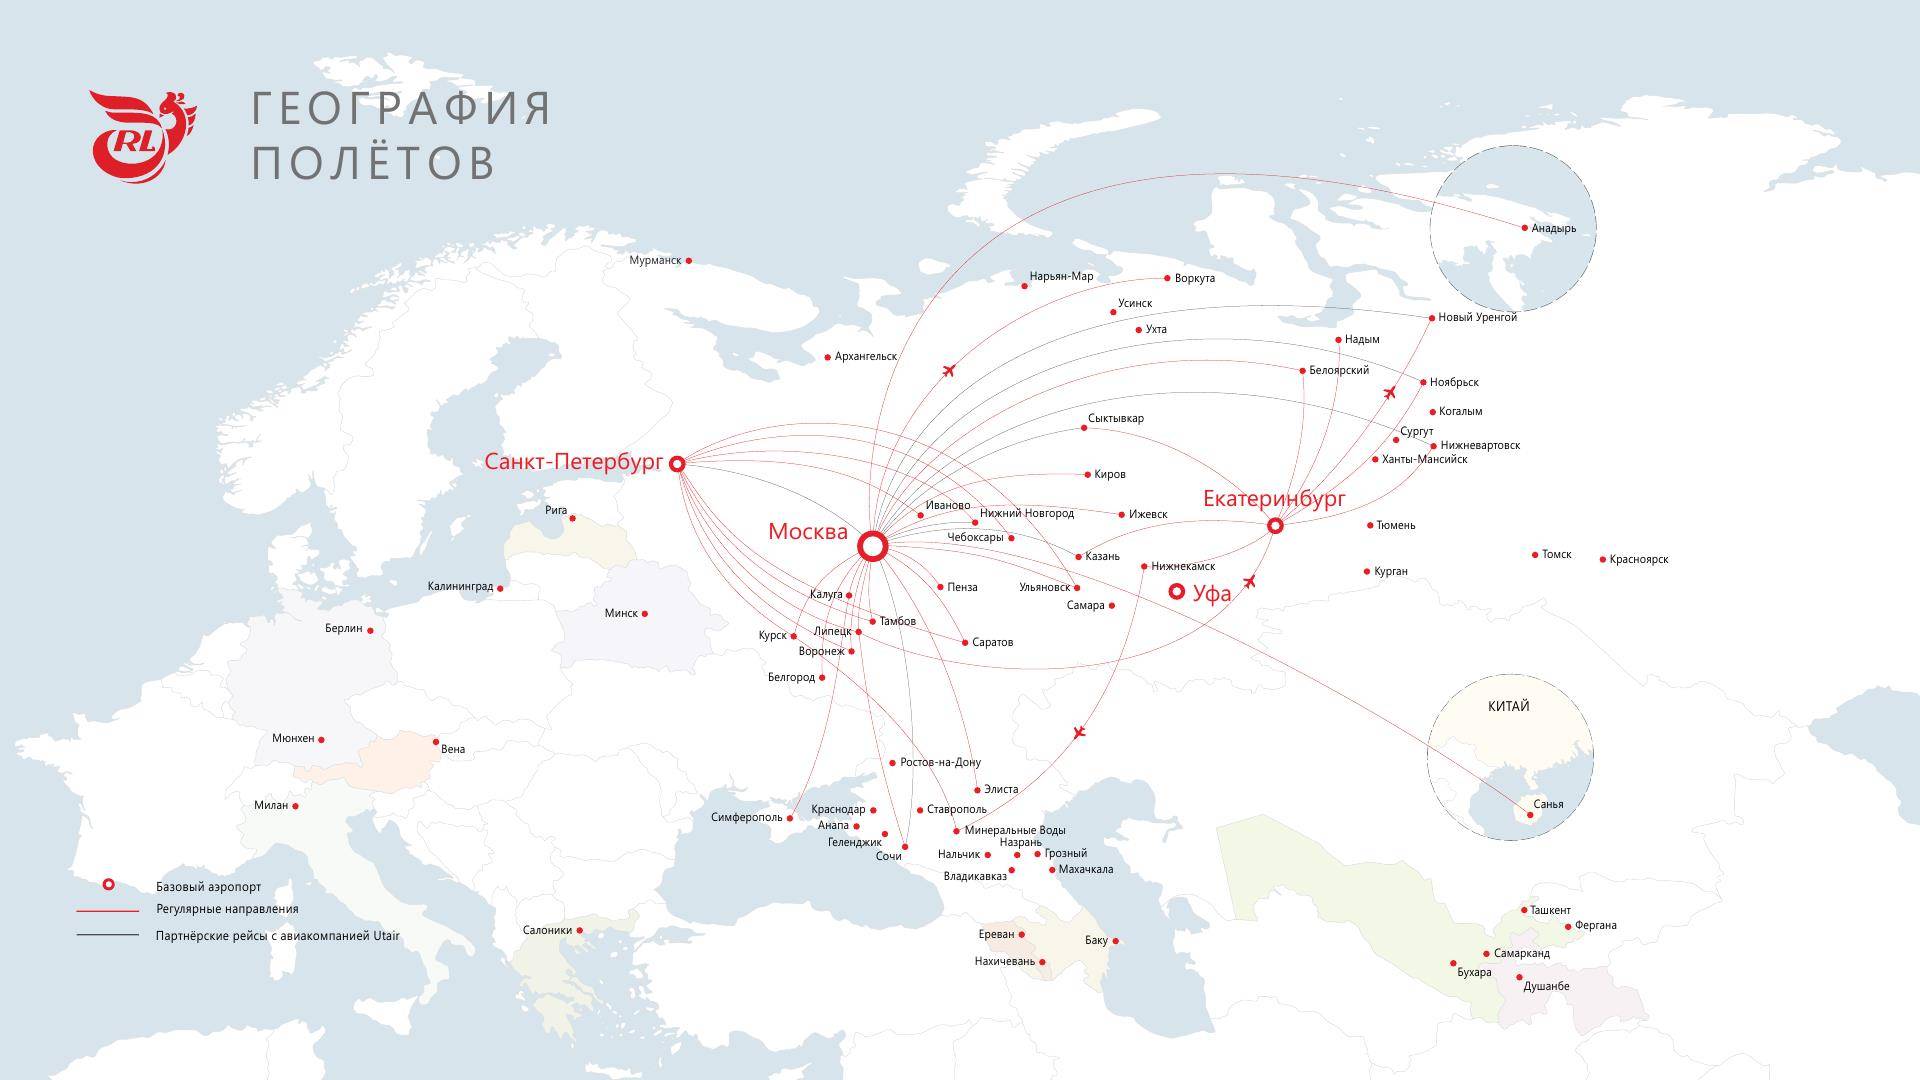 Карта зеленая линия норильск - 93 фото